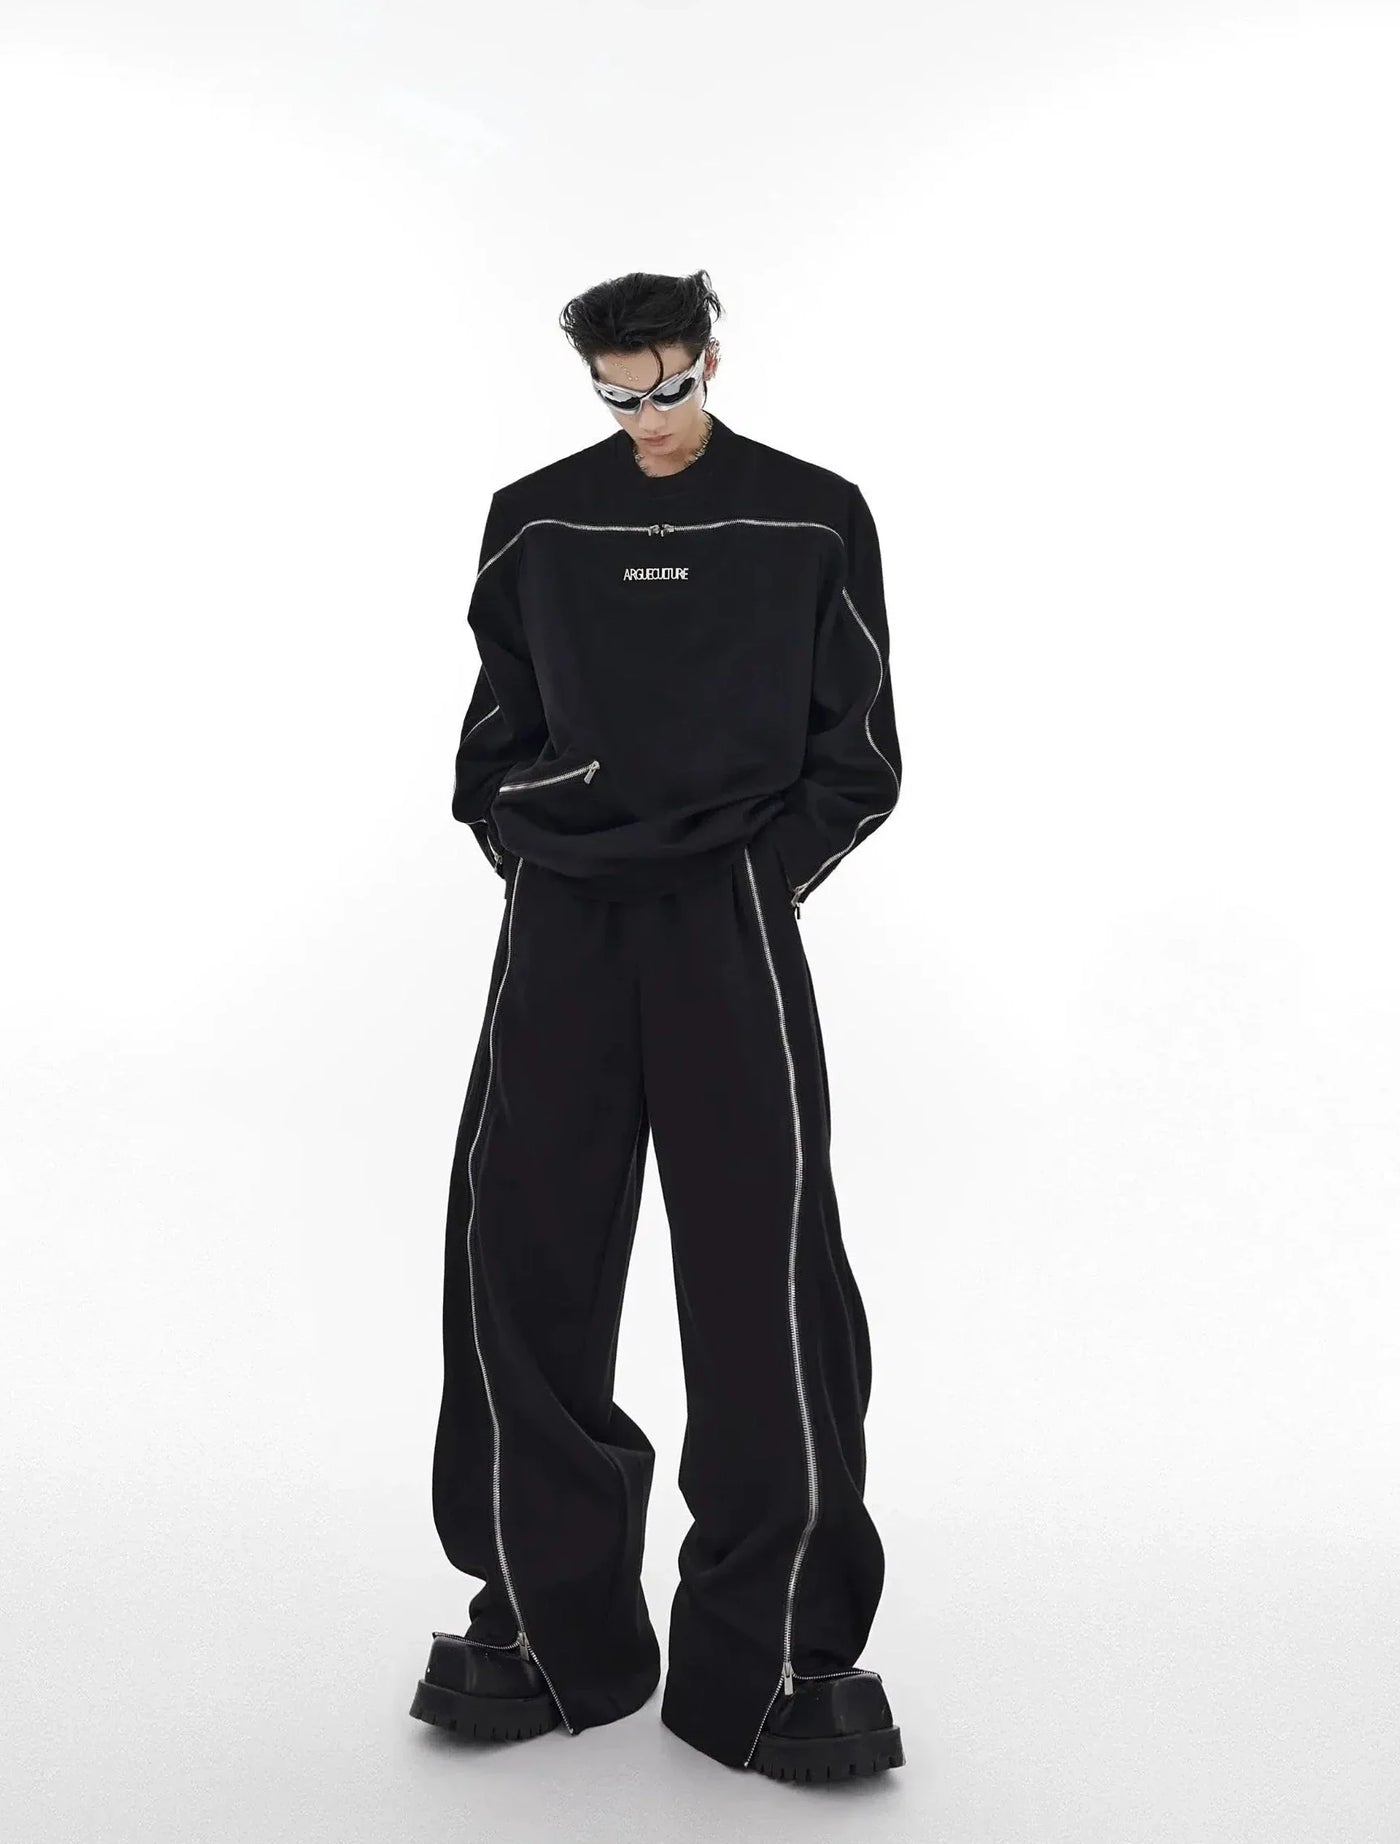 Argue Culture Zipper Outline Crewneck & Pants Set Korean Street Fashion Men'S Set By Argue Culture Shop Online at OH Vault